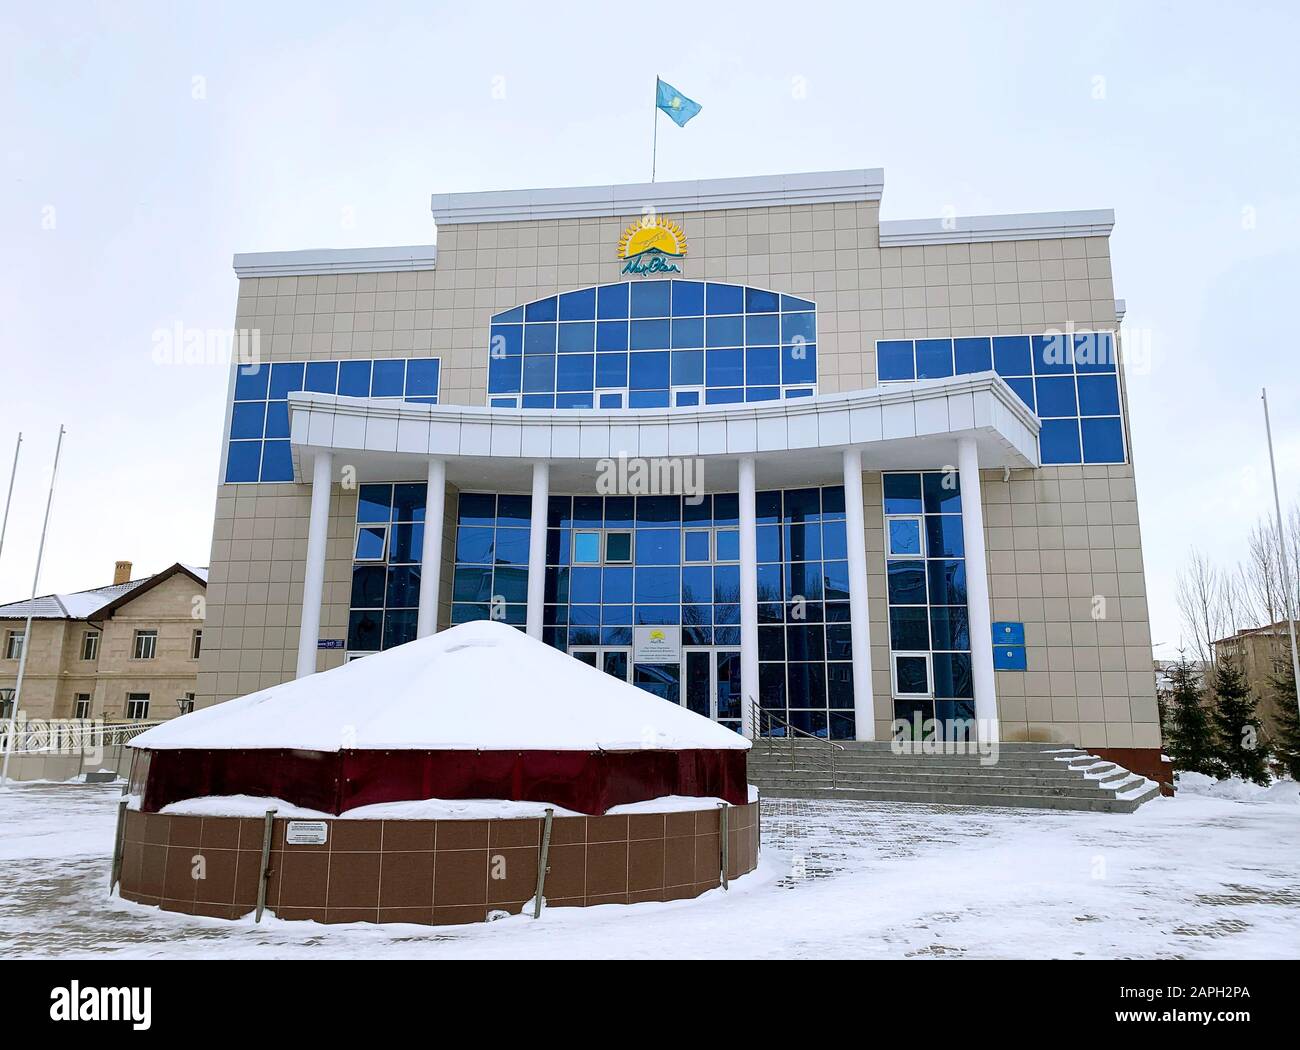 Kokshetau/Kazakhstan - 23 gennaio 2020: Vista della costruzione del partito politico di Nur Otan a Kokshetau, Kazakhstan in inverno. Edificio Nur Otan. Foto Stock